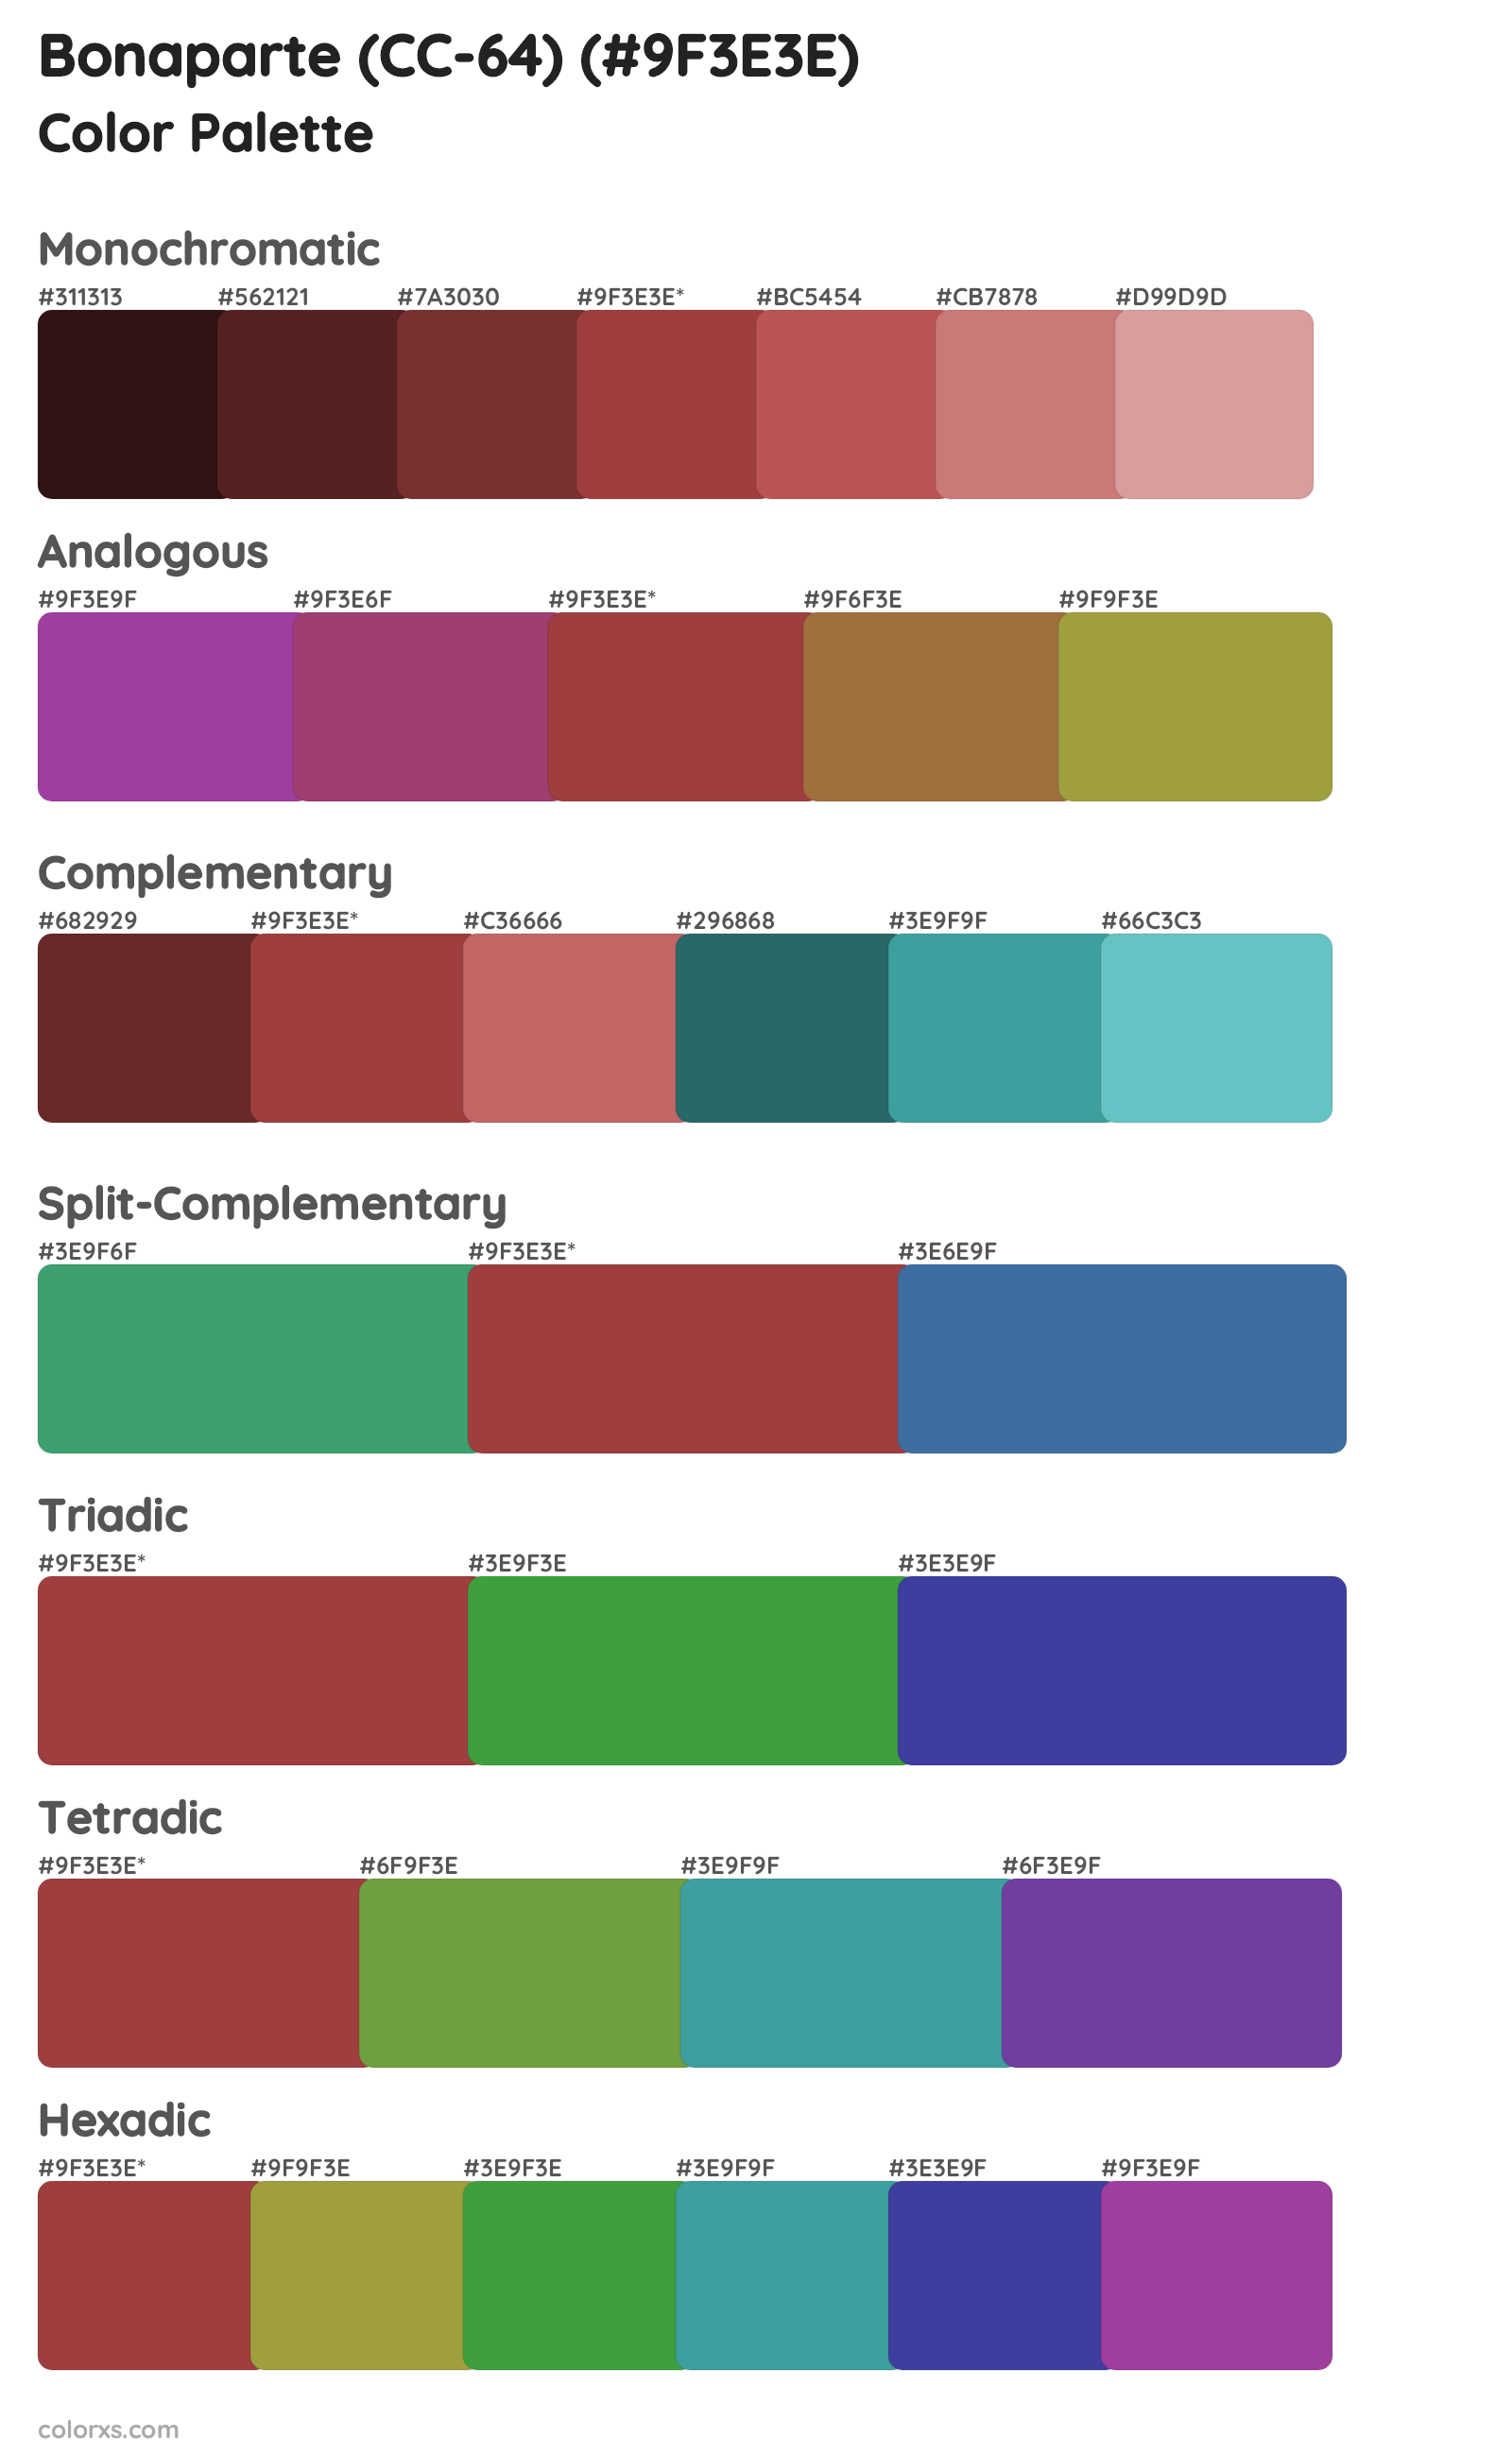 Bonaparte (CC-64) Color Scheme Palettes